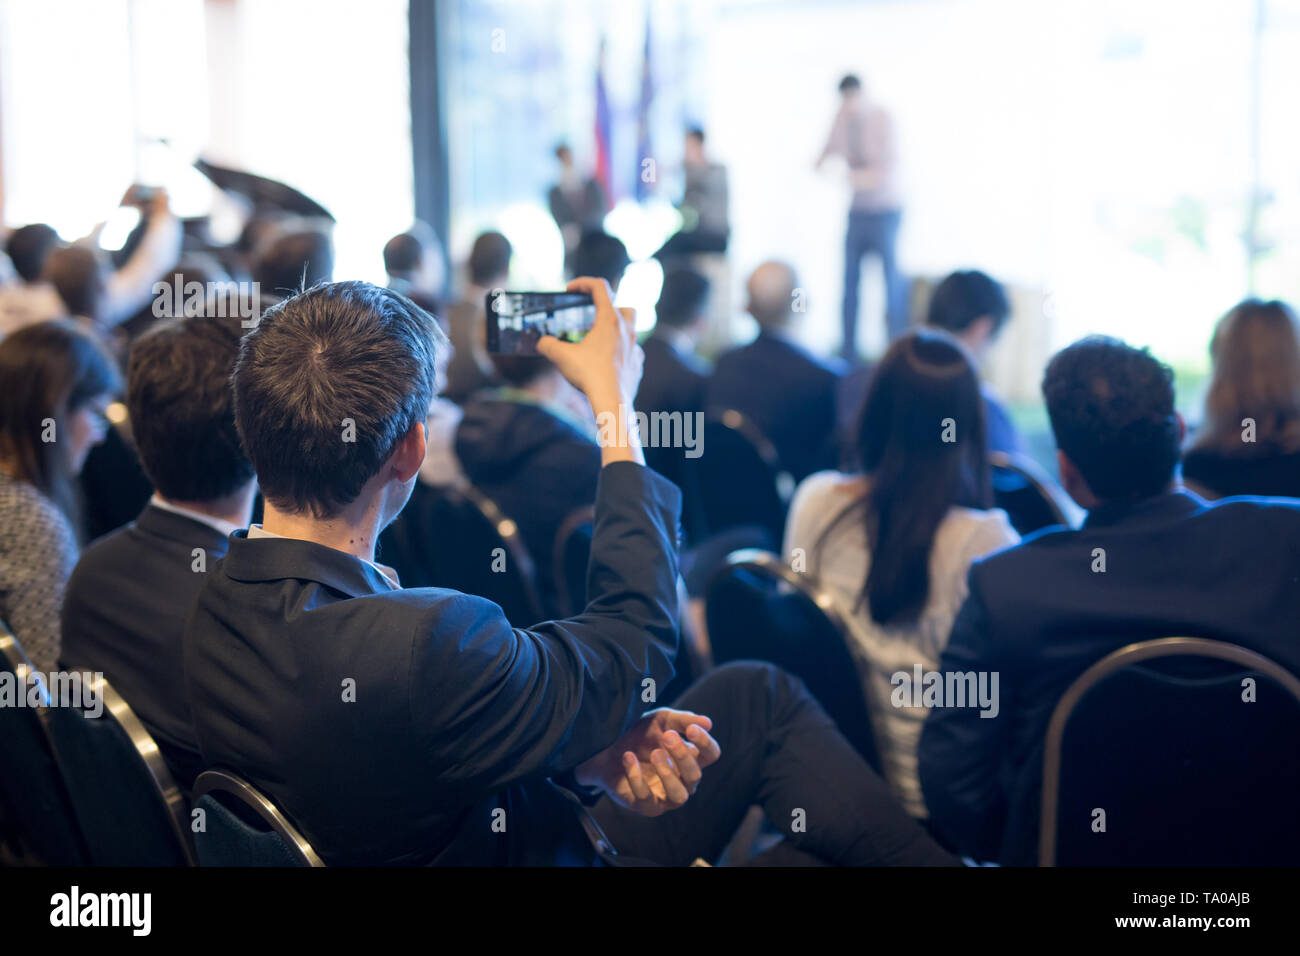 El Empresario toma una foto de negocio corporativo presentación en la sala de conferencias mediante smartphone. Foto de stock